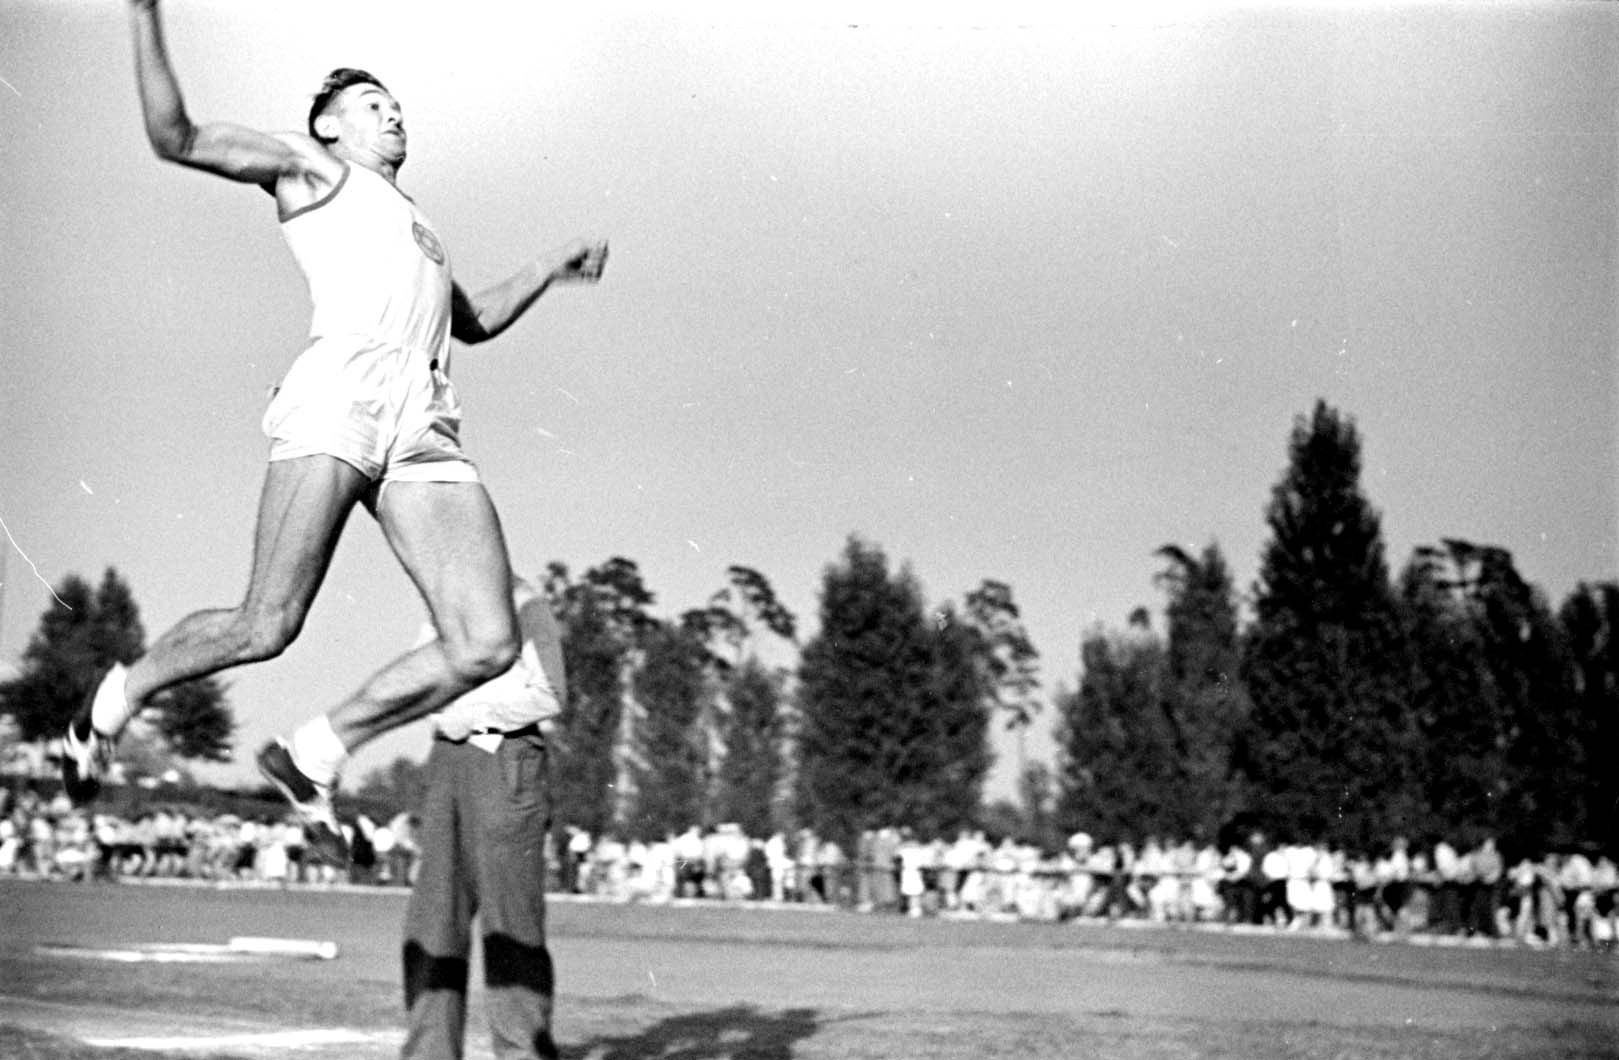 Alemania, agosto de 1937. Evento de salto en largo en una competencia de atletismo de "Macabi"